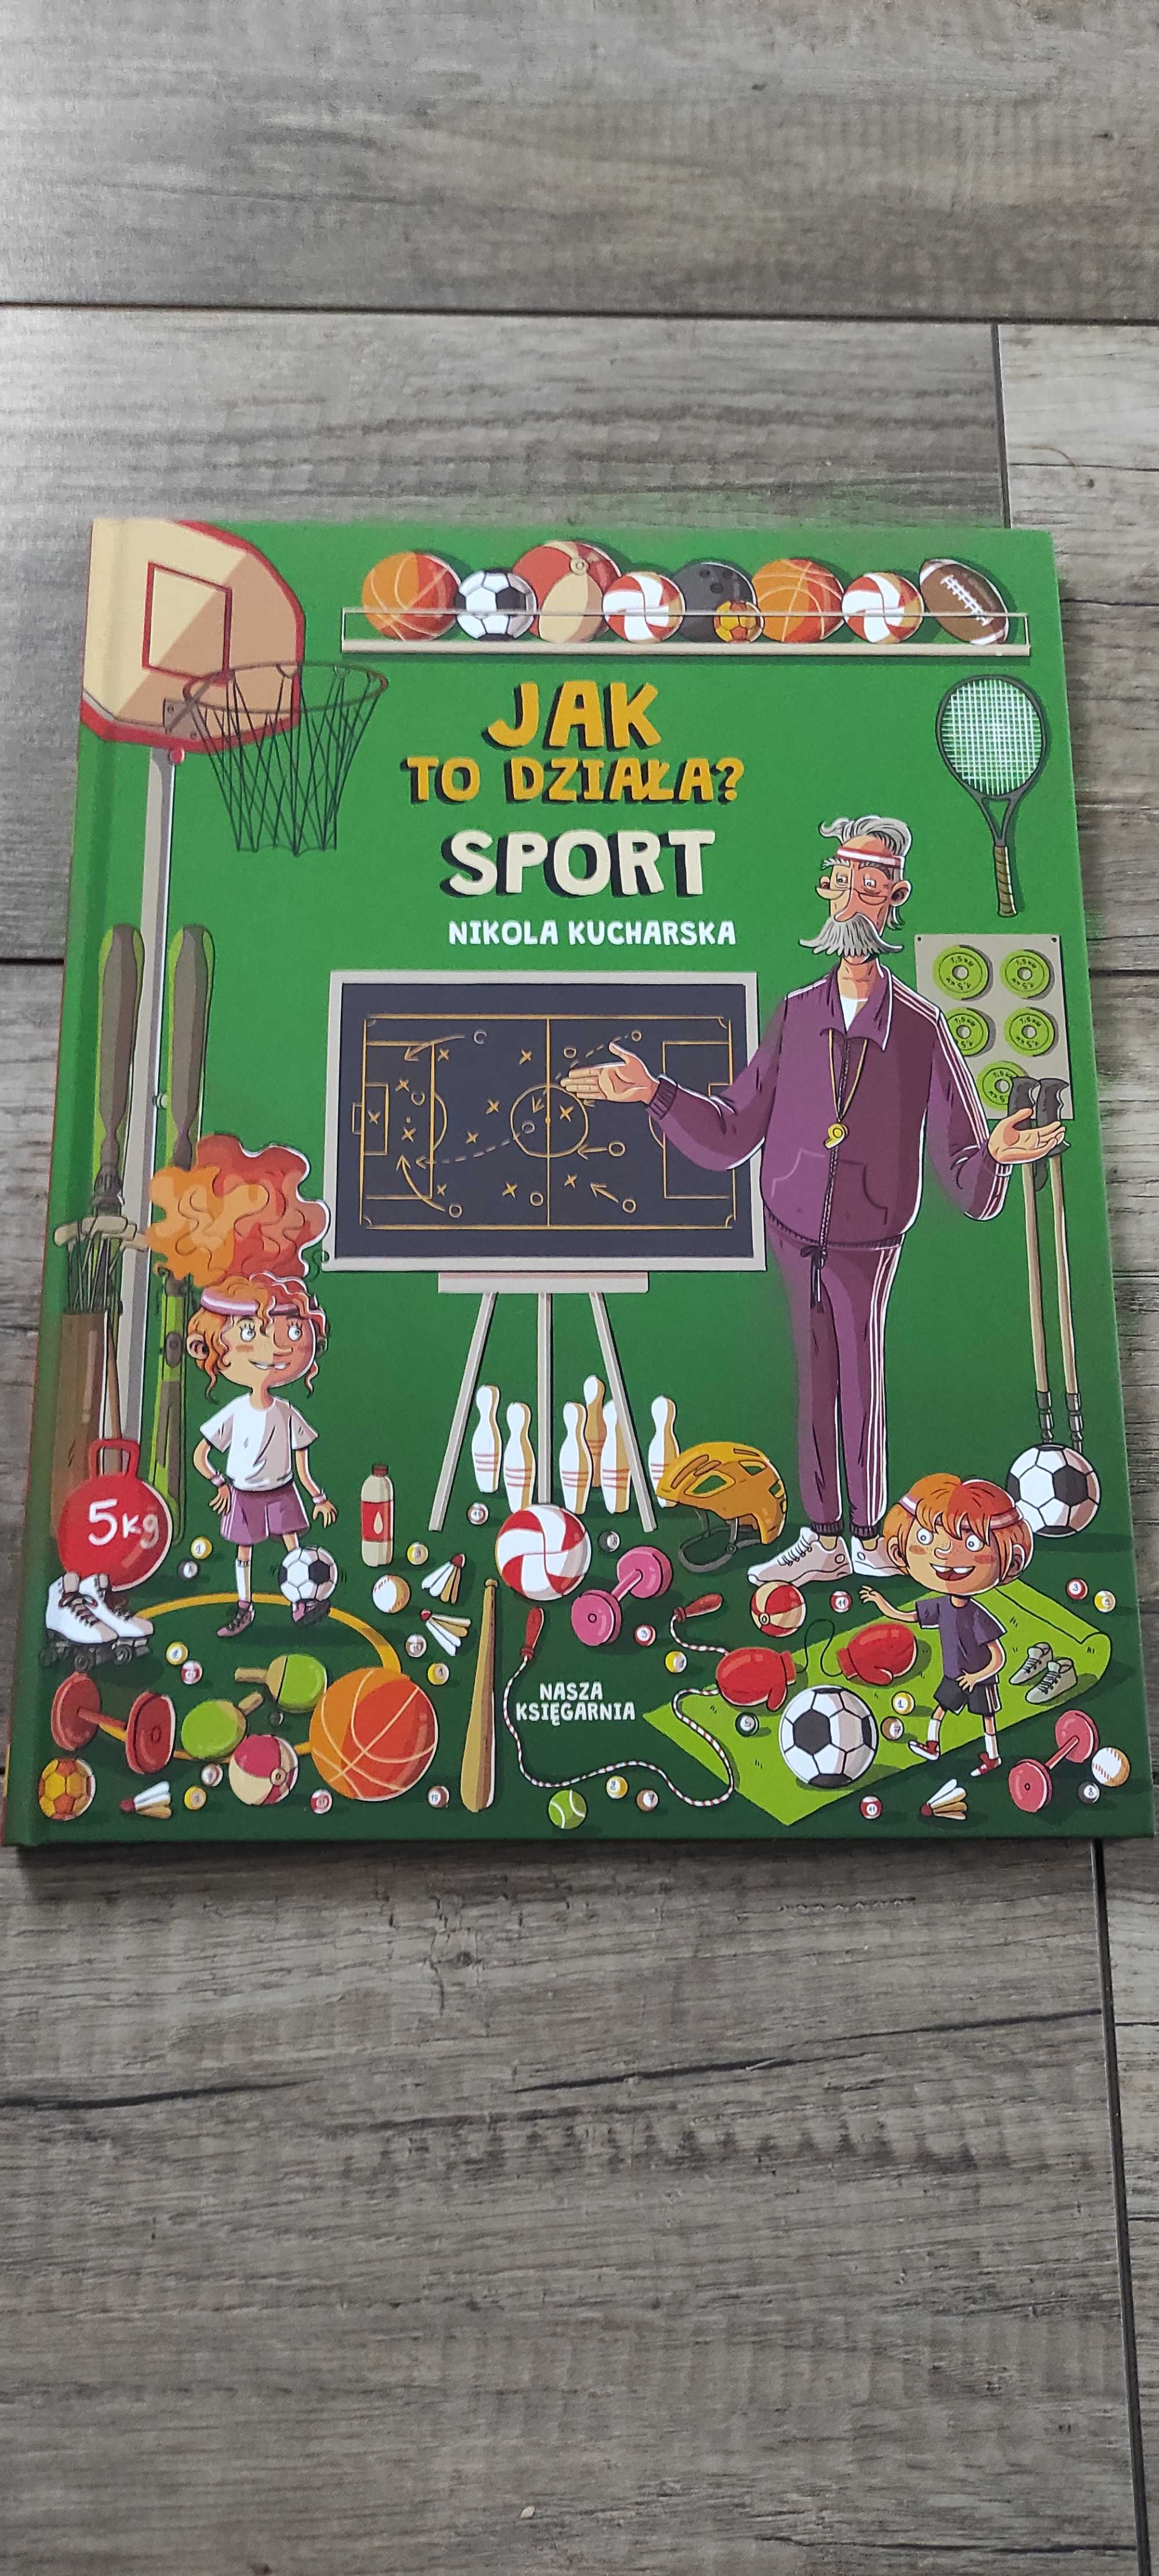 Książka dla dzieci "Jak to działa? Sport"